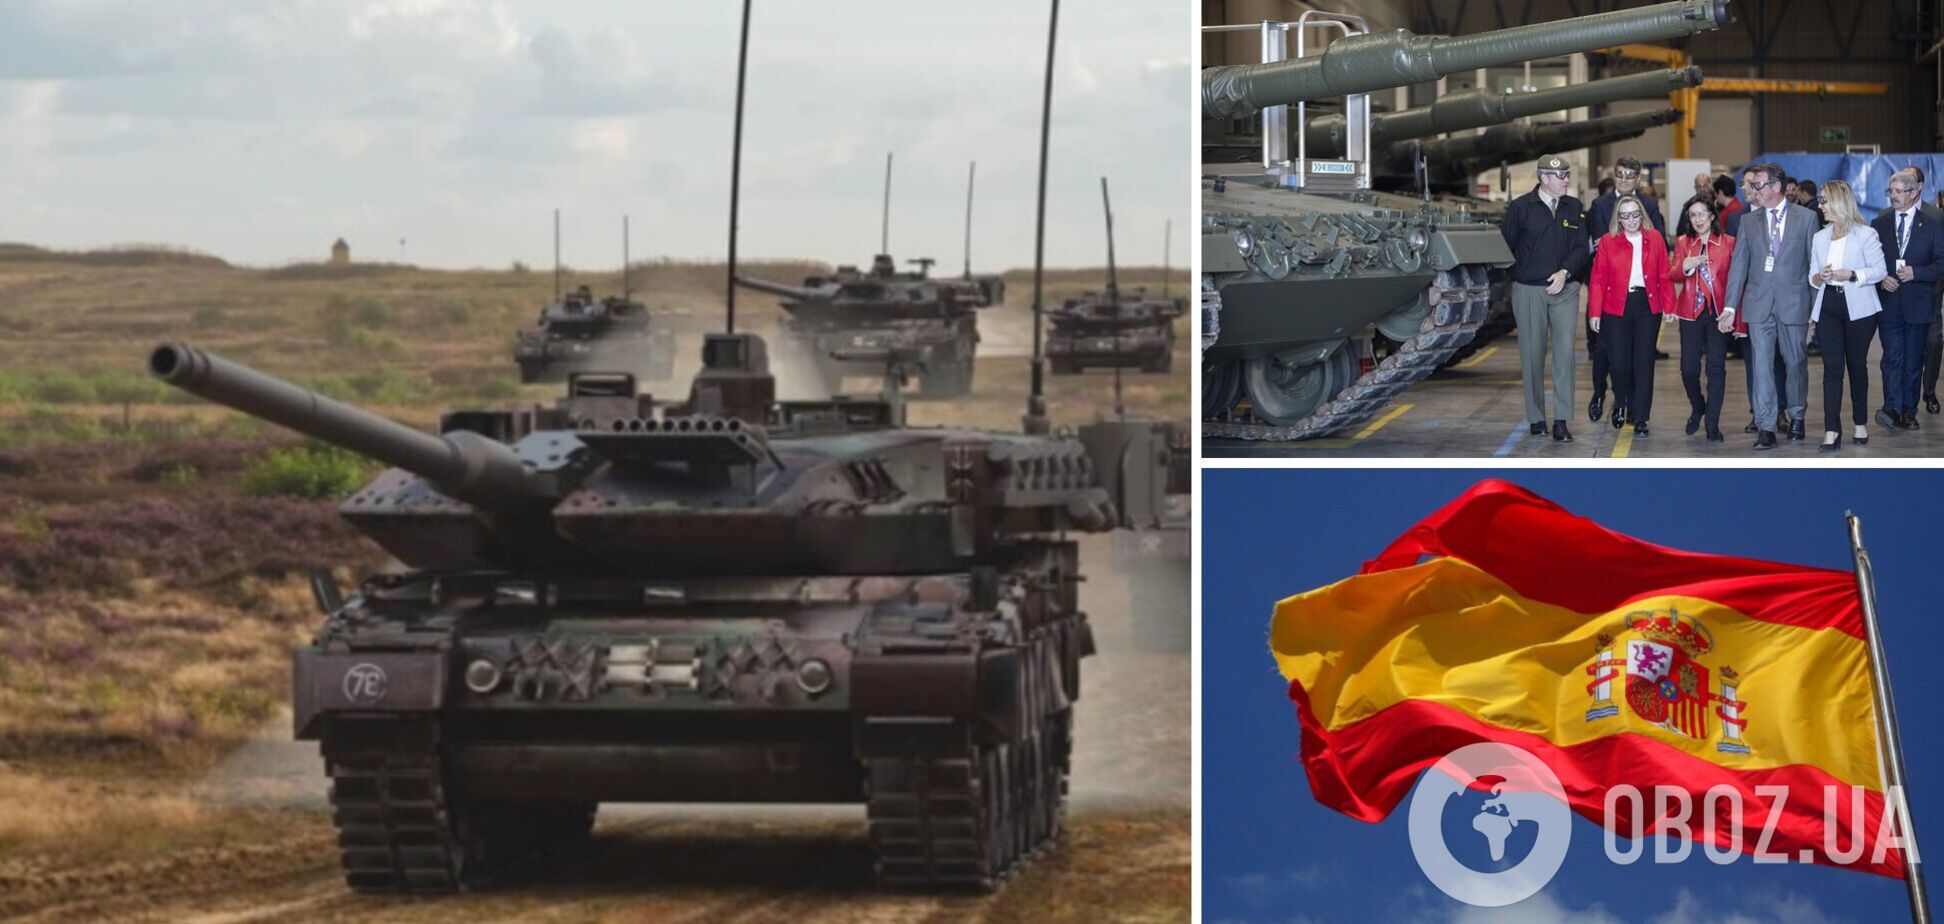 Іспанія направить в Україну шість танків Leopard вже наступного тижня, – міністерство оборони  